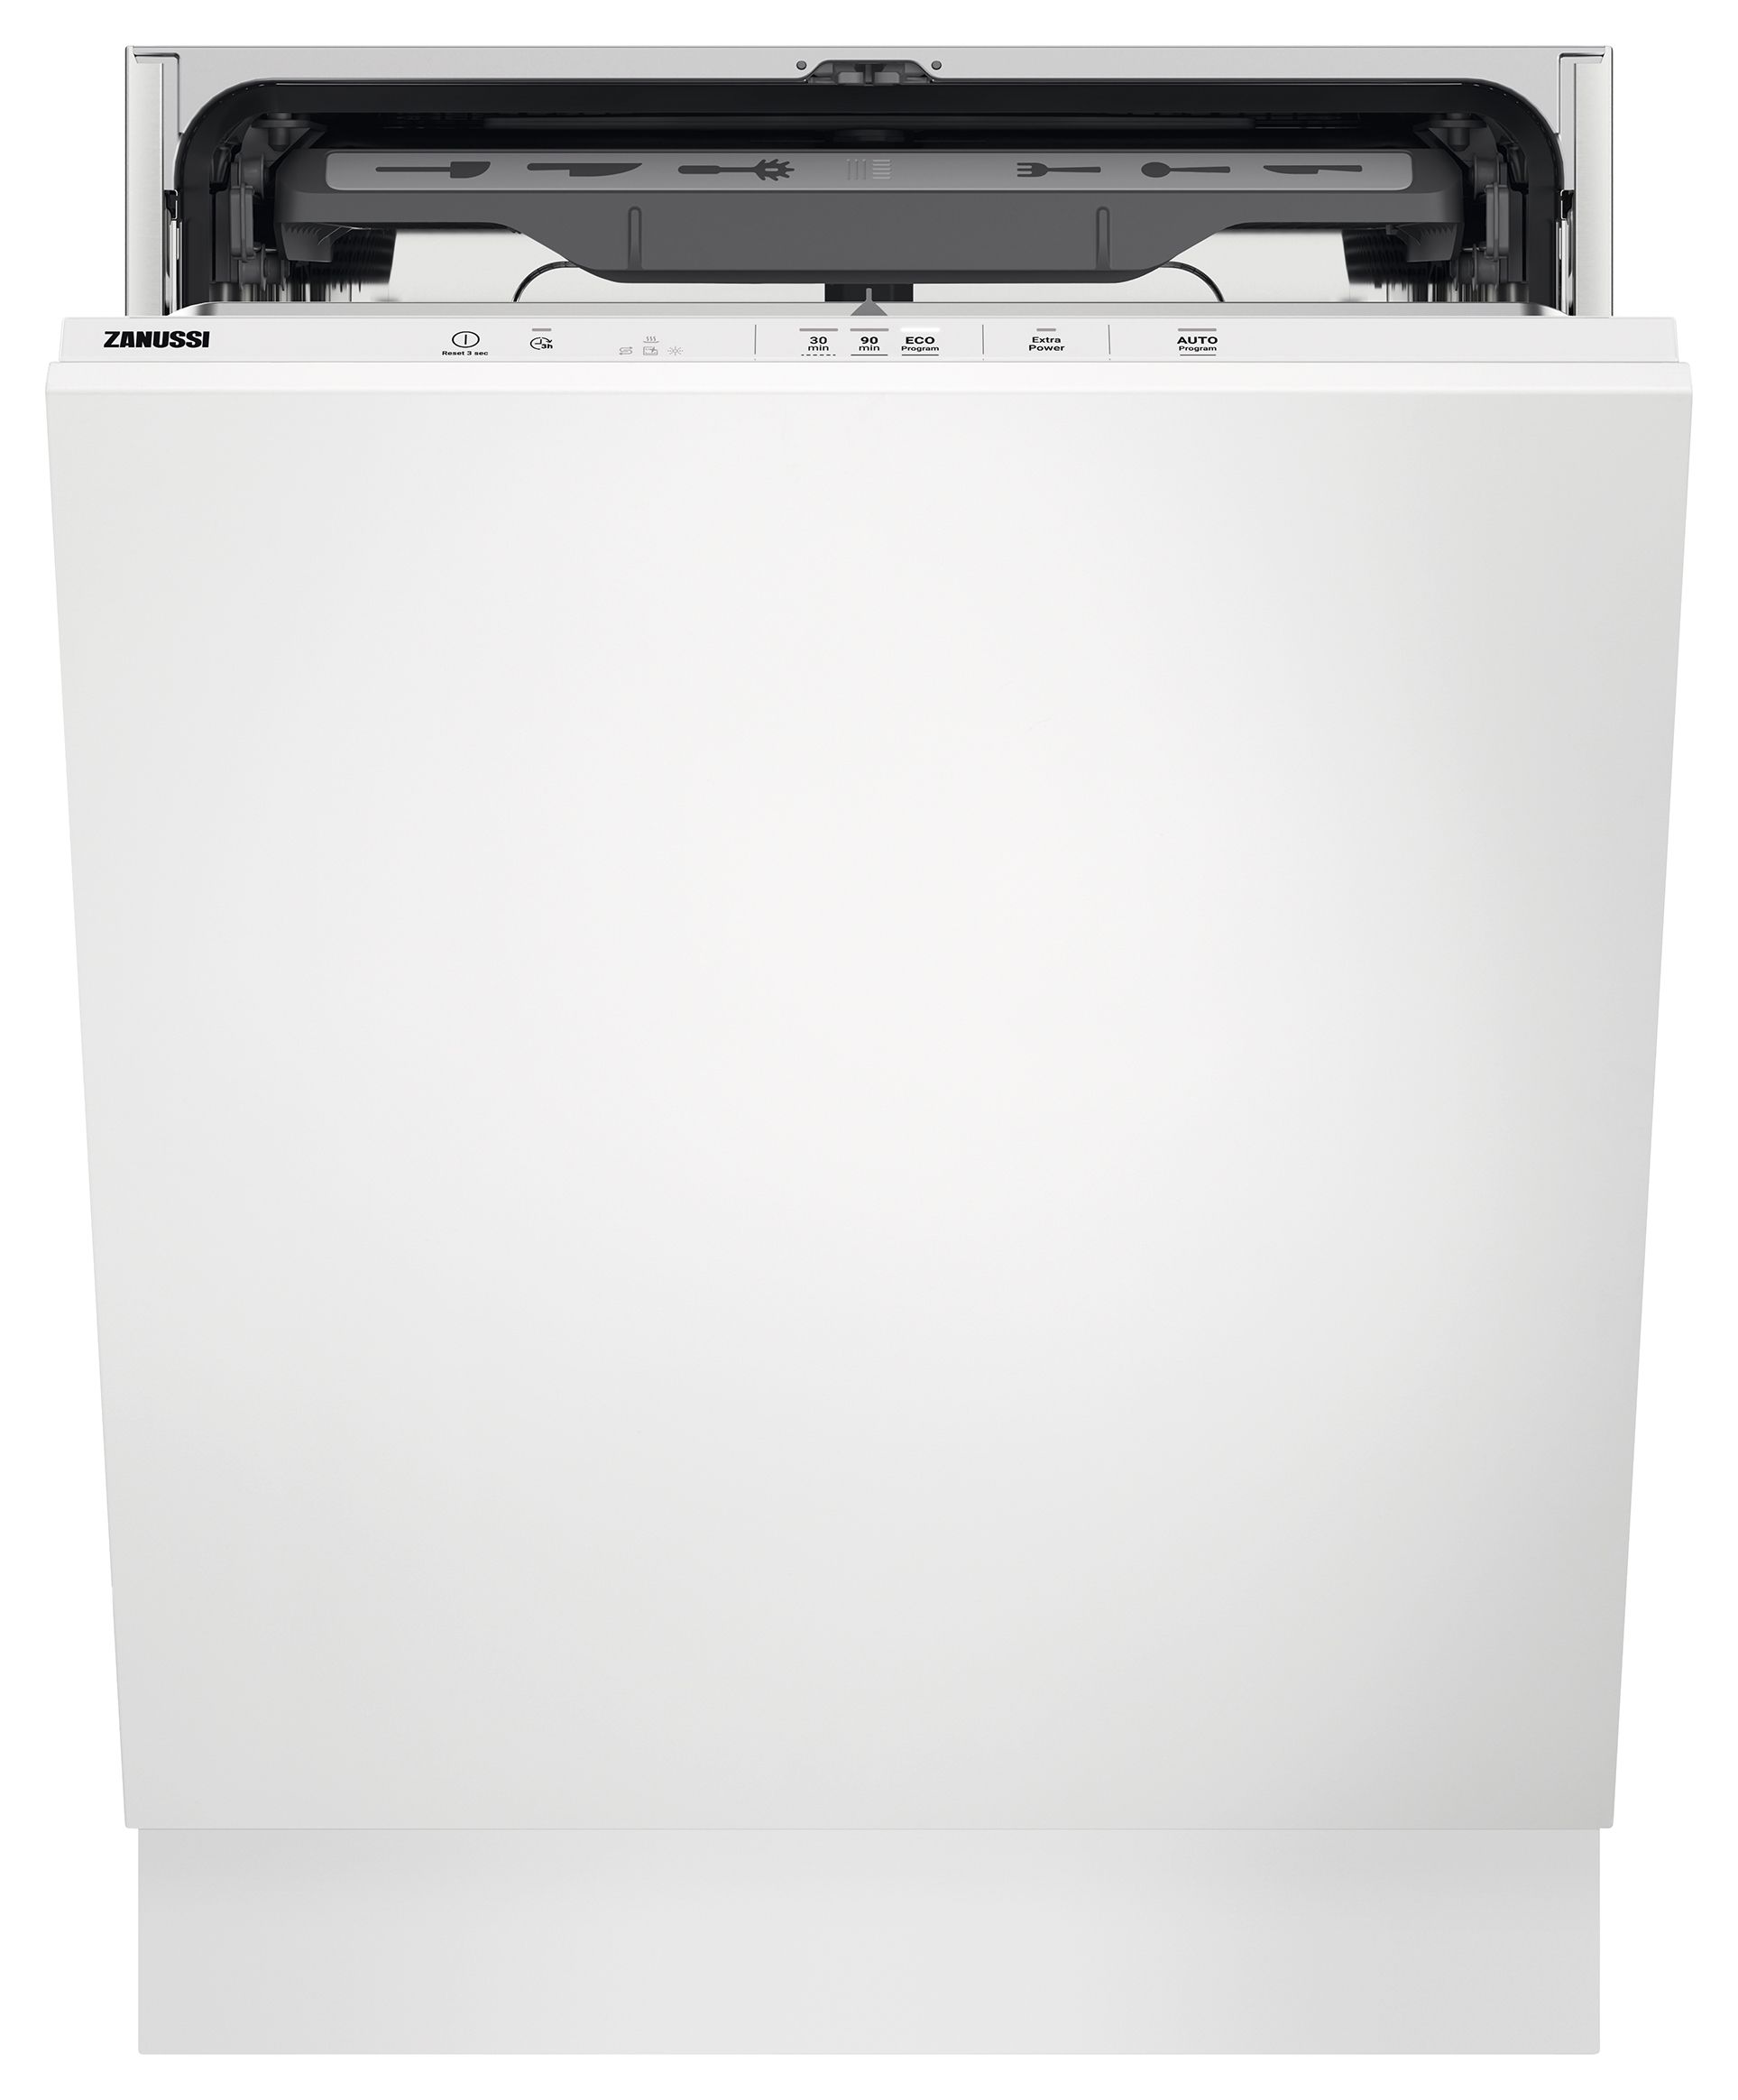 Zanussi 60cm AirDry Dishwasher ZDLN2621 - White